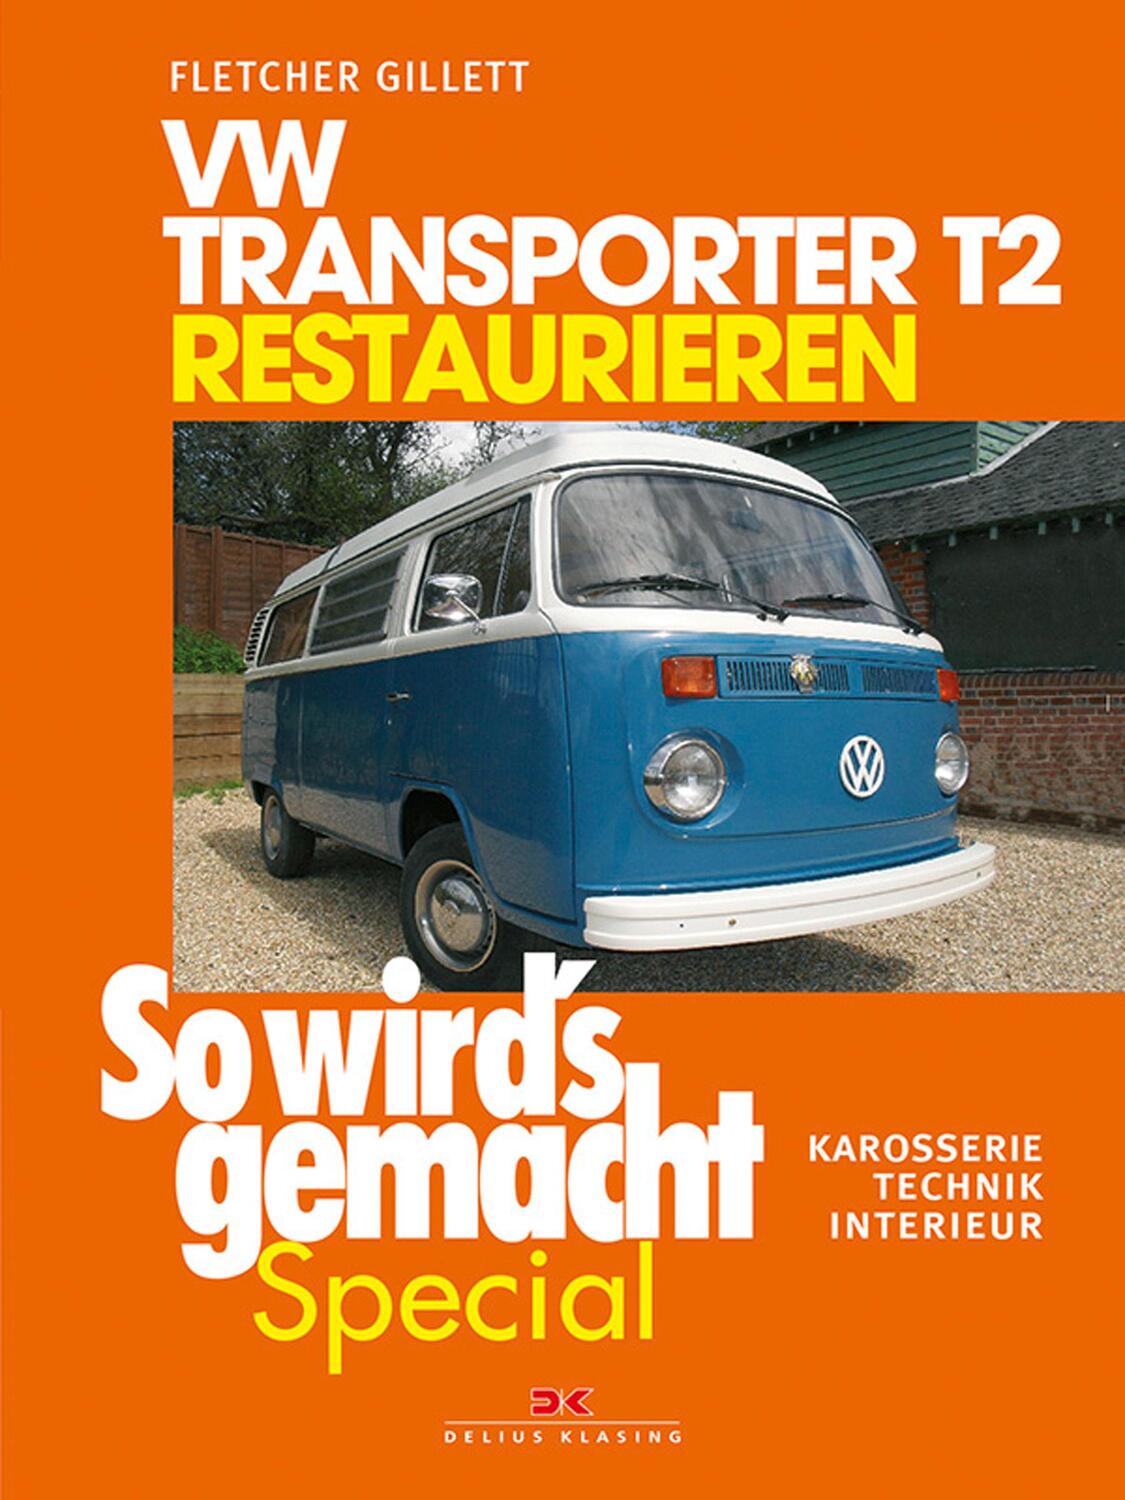 VW Transporter T2 restaurieren (So wird's gemacht Special Band 6) - Gillett, Fletcher